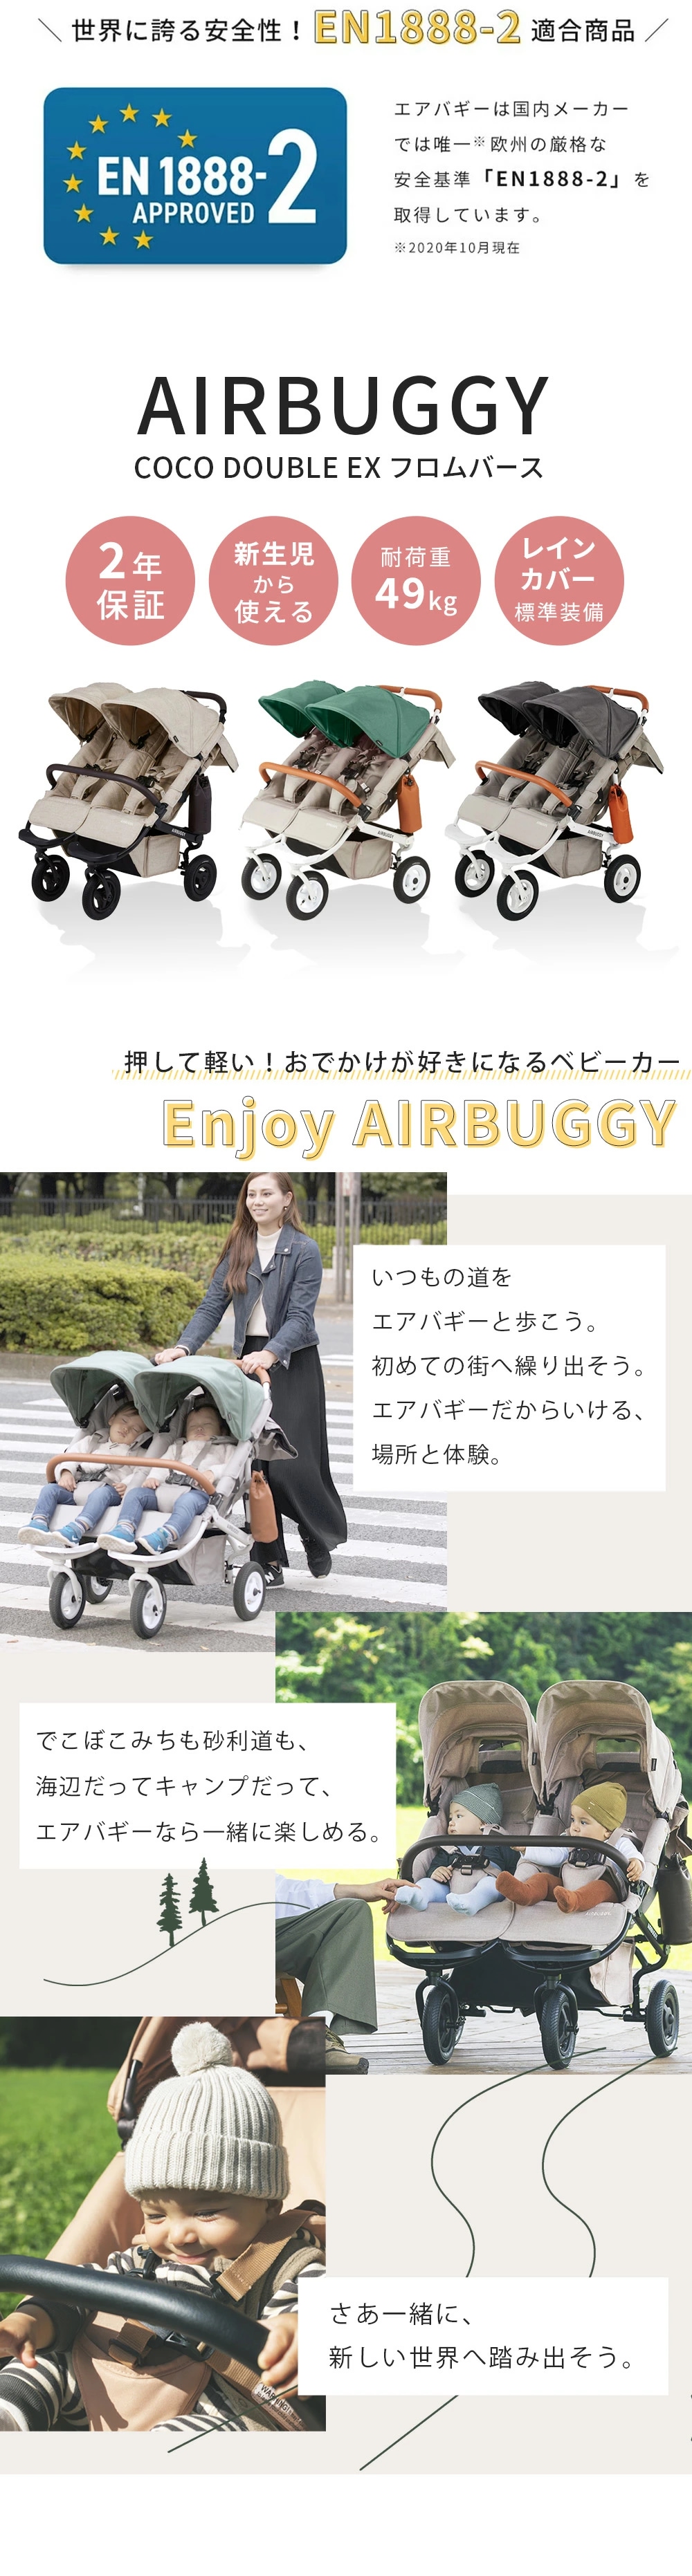 AirBuggy COCO ダブル EX フロムバース / ストーン-ブリベビ BrilliantBaby 本店